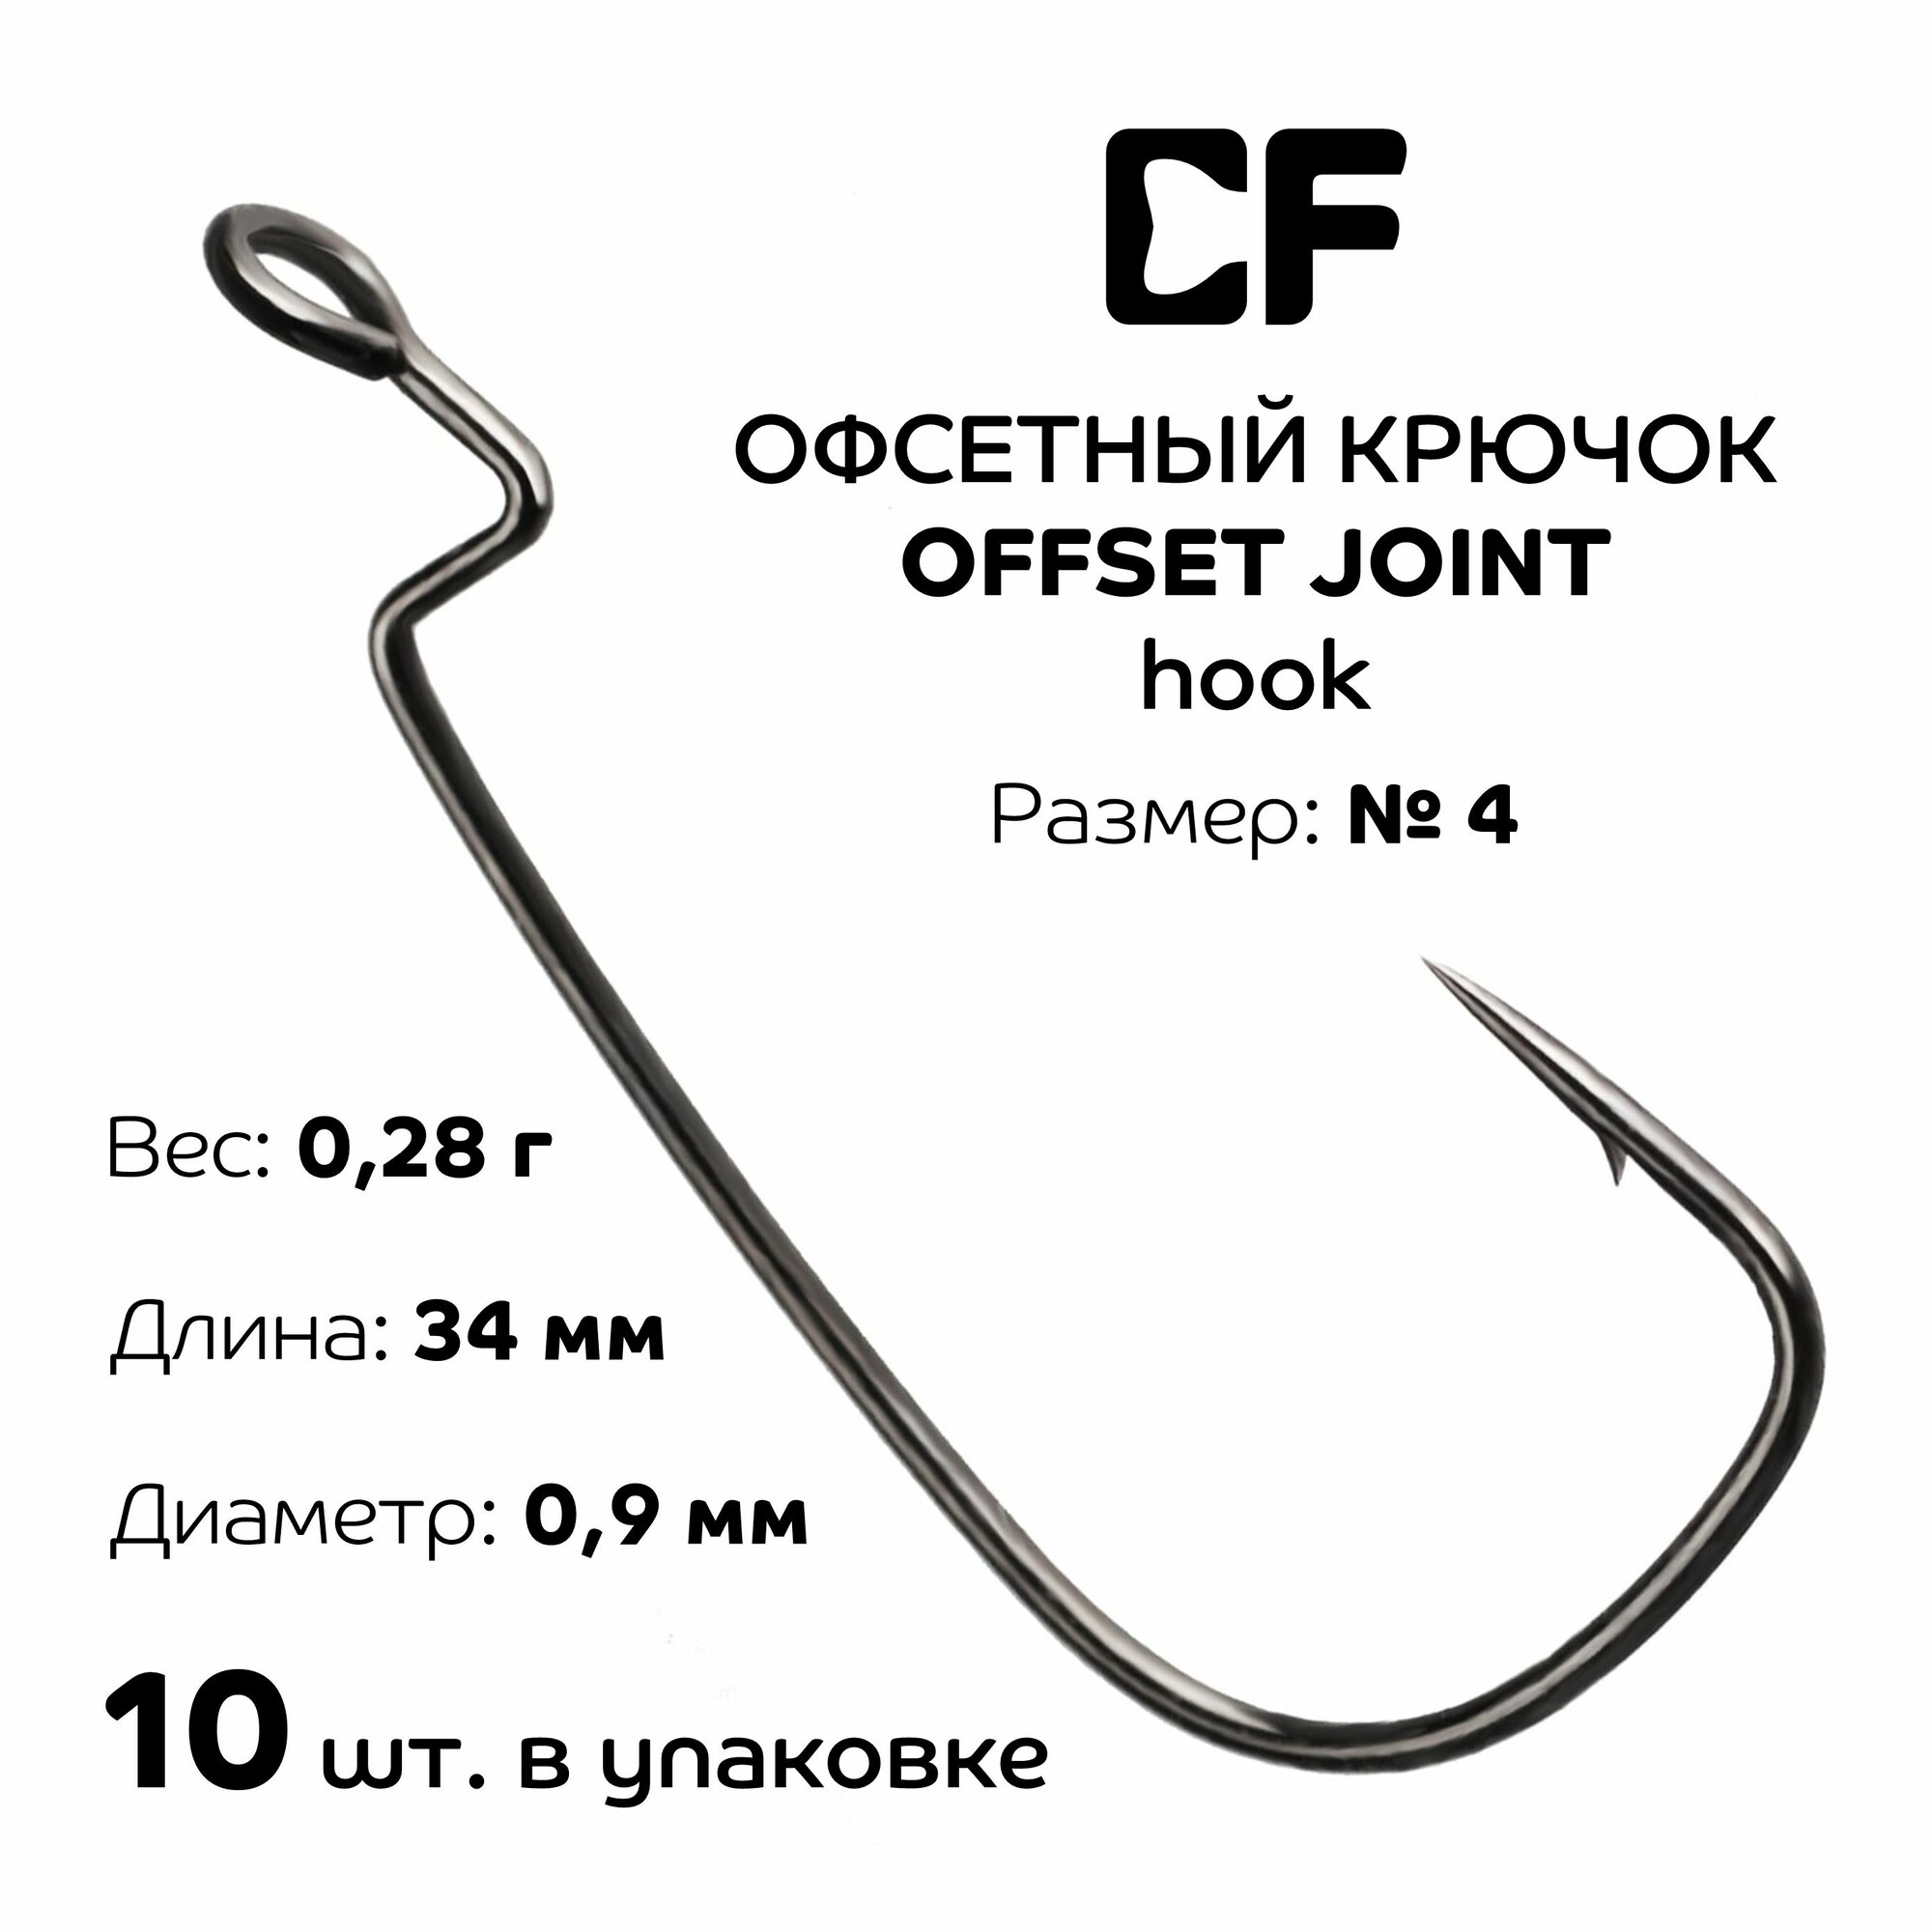 Офсетный крючок CF Offset joint hook №4 10 шт